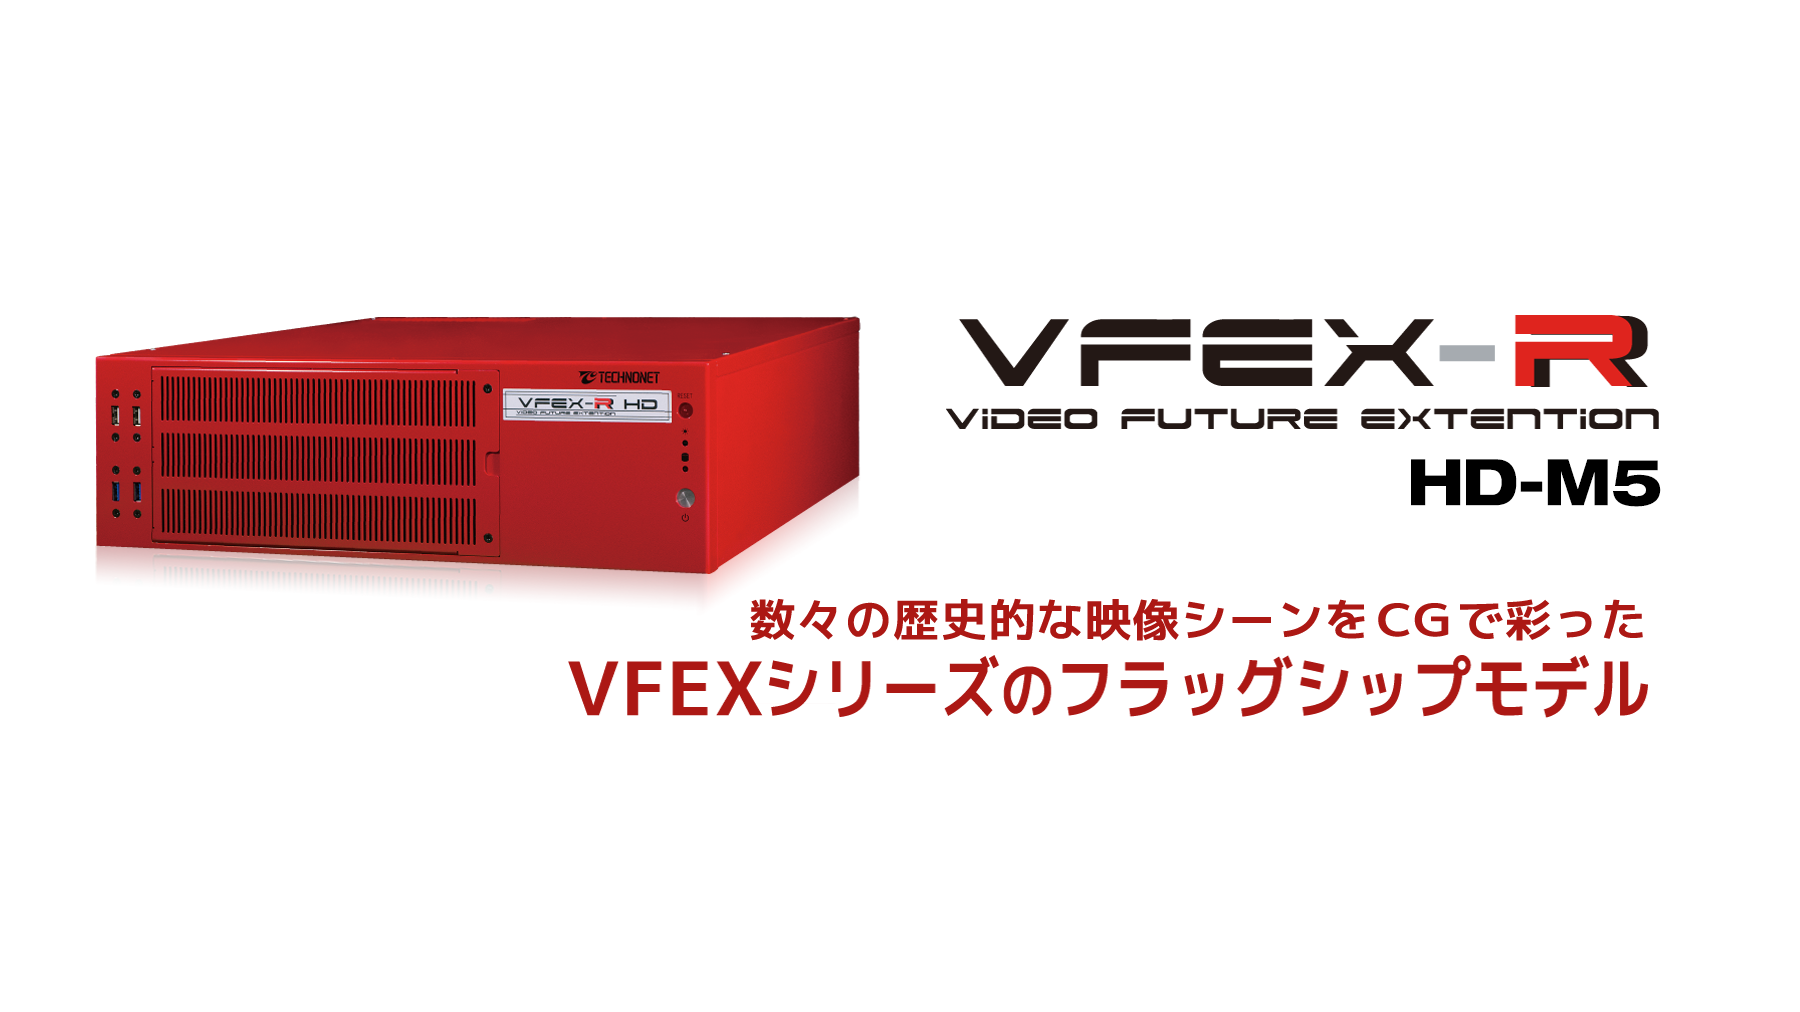 VFEX-R <HD-M5>